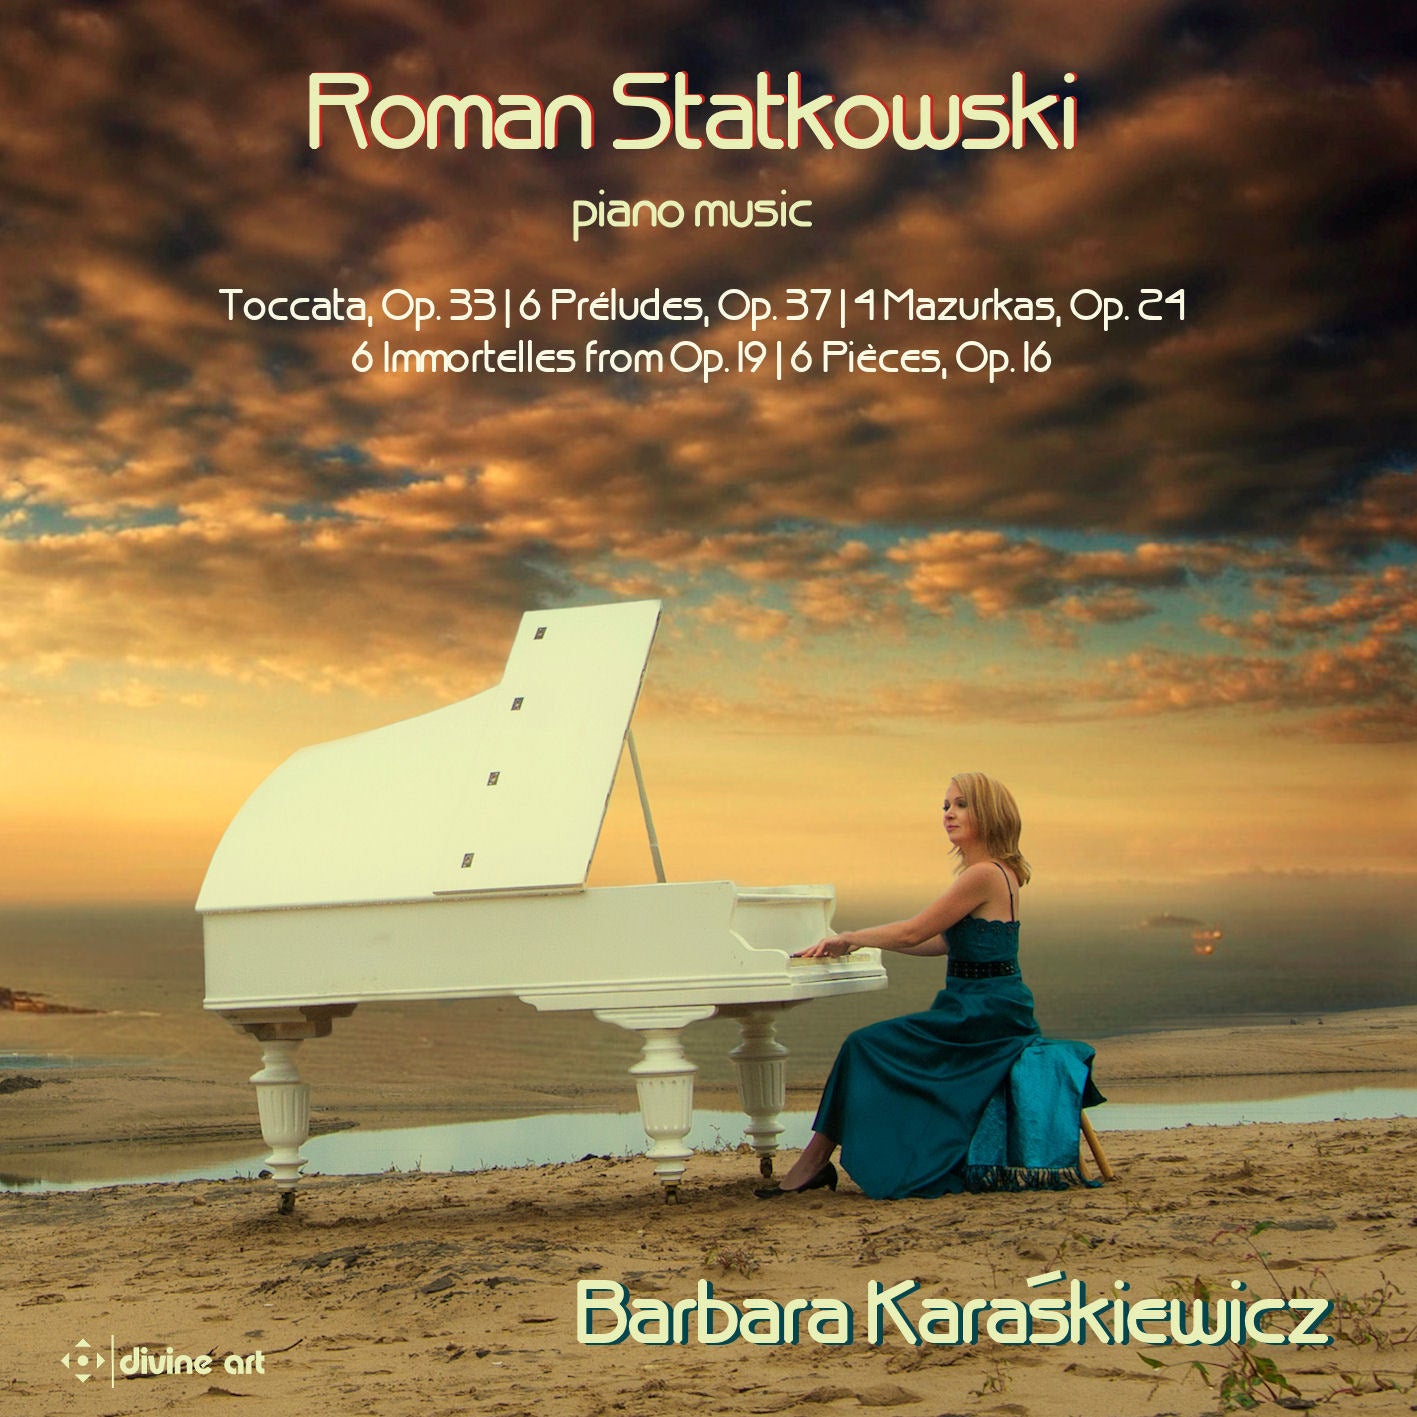 Statkowski: Piano Music / Karaskiewicz